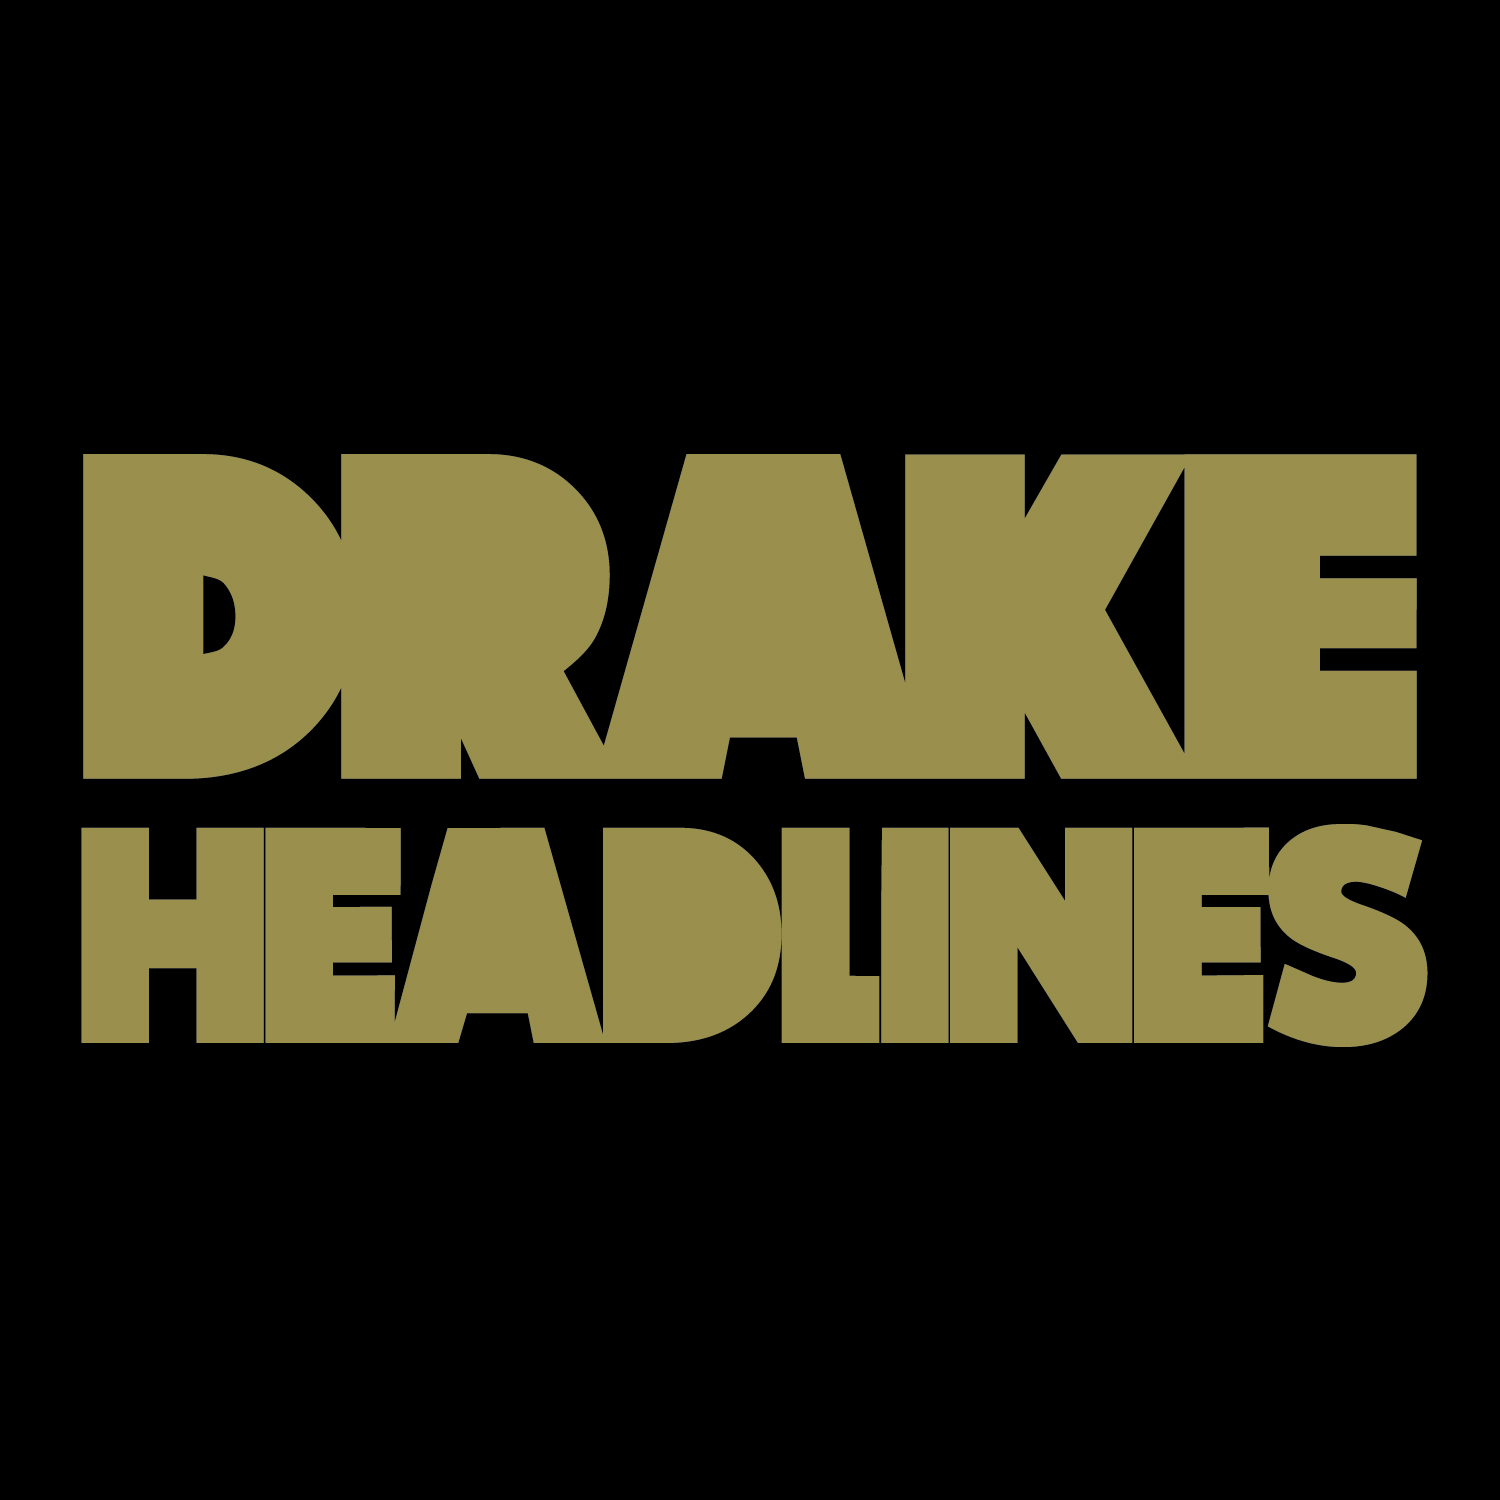 Drake+headlines+download